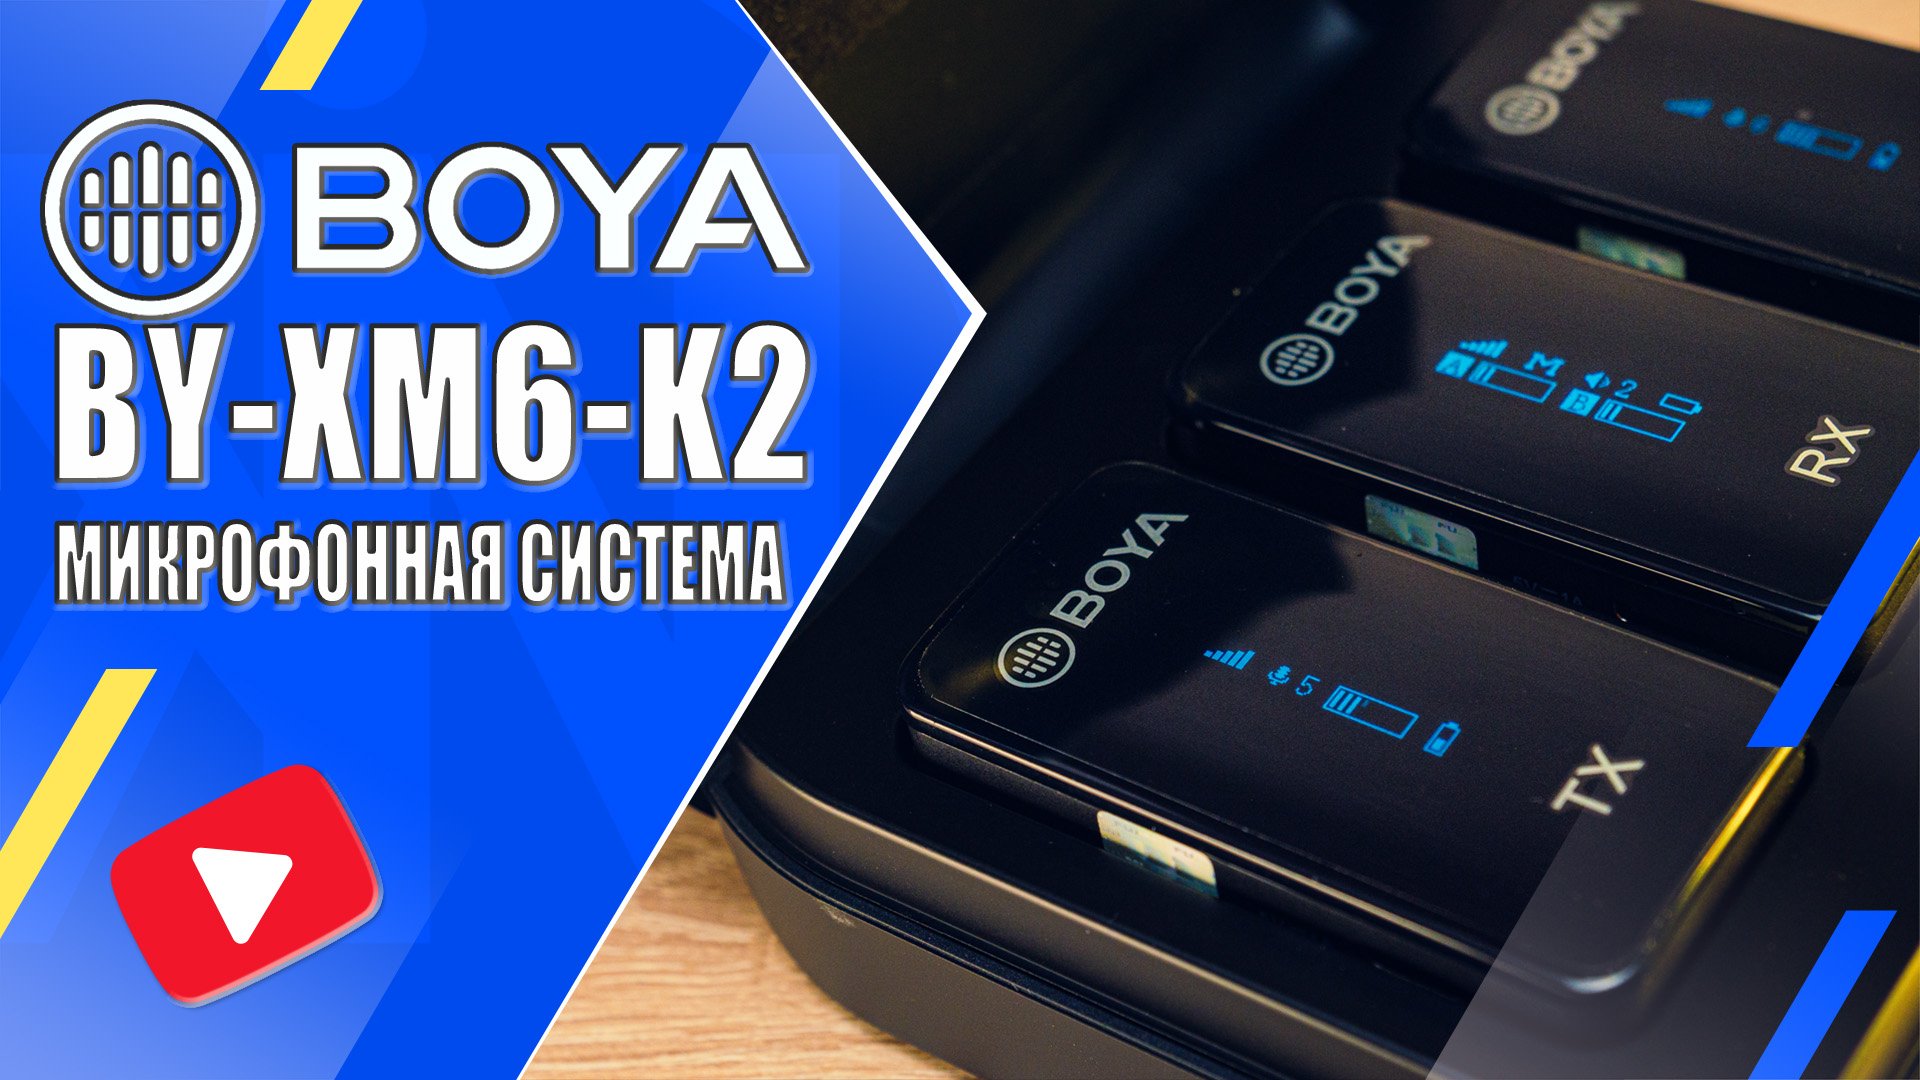 BOYA BY-XM6-K2 | Обзор и тесты беспроводной микрофонной системы 2,4ГГц